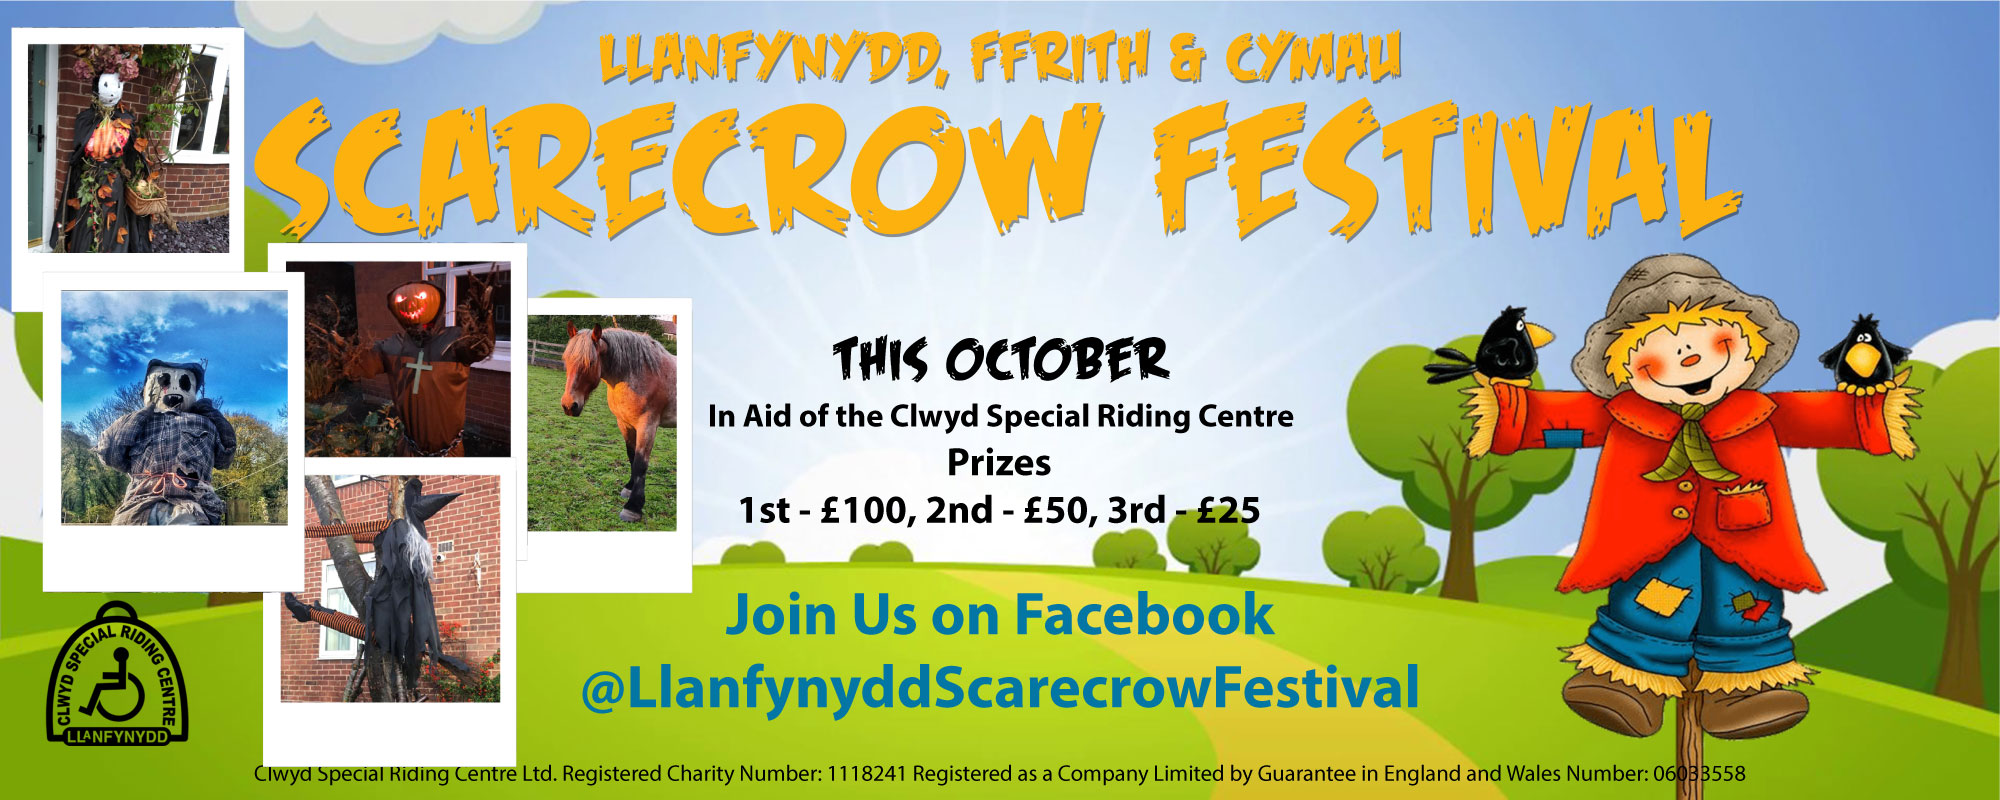 The Llanfynydd, Ffrith and Cymau Scarecrow festival is back!